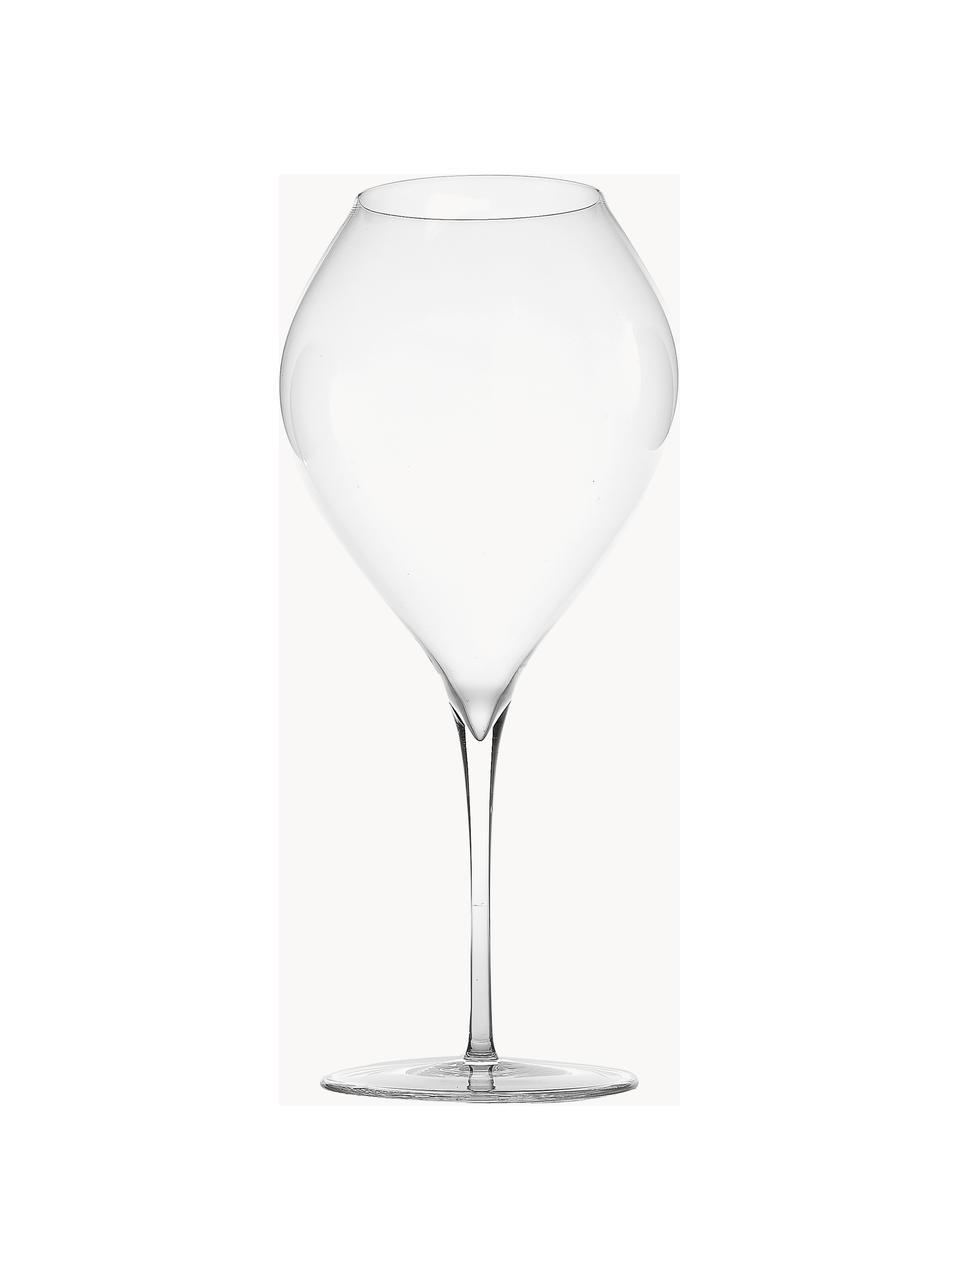 Kristall-Weingläser Ultralight, 2 Stück, Kristallglas, Transparent, Ø 11 x H 25 cm, 820 ml